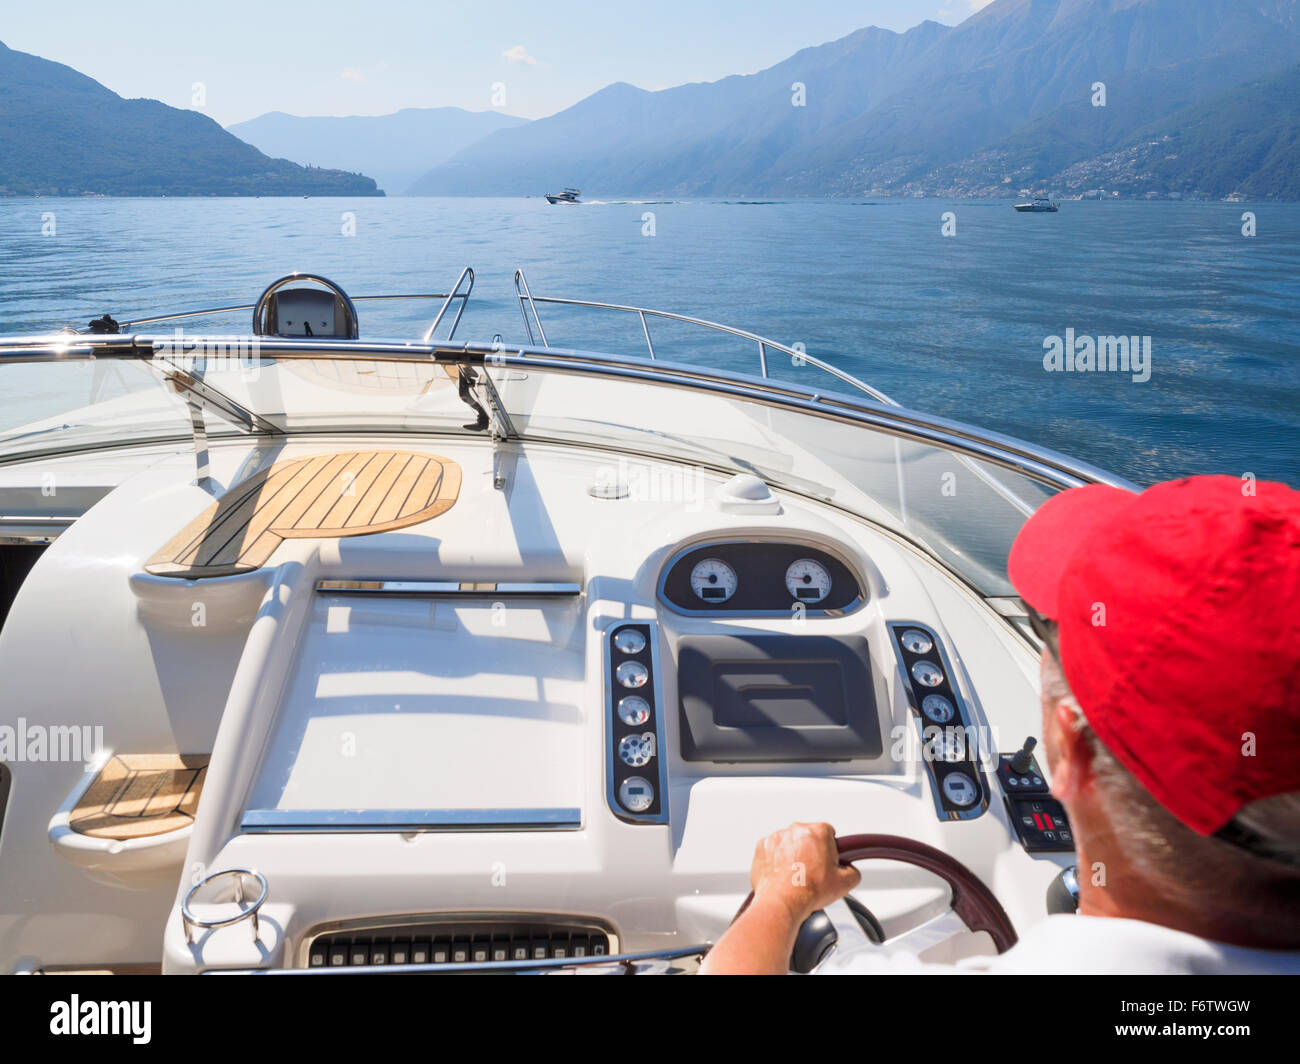 Switzerland, Ticino, Lago Maggiore, senior man on boat Stock Photo